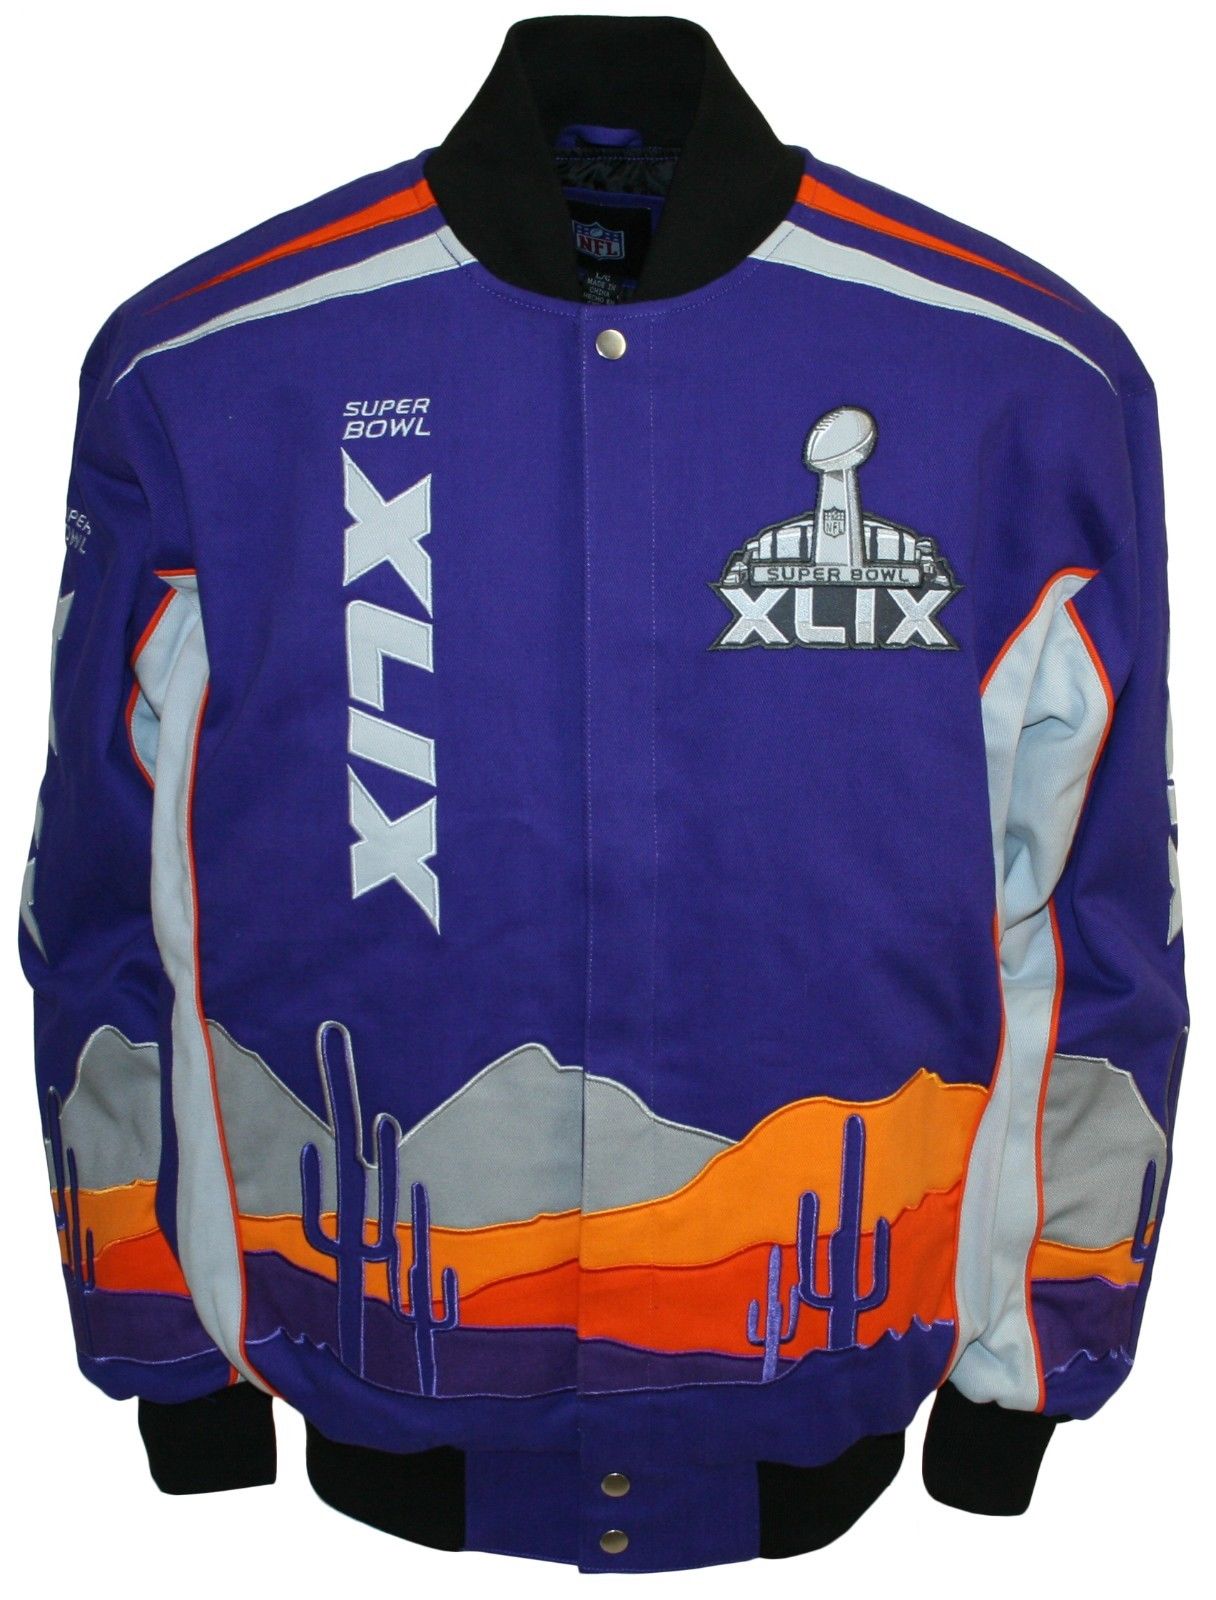 Super Bowl XLIX       Clothing